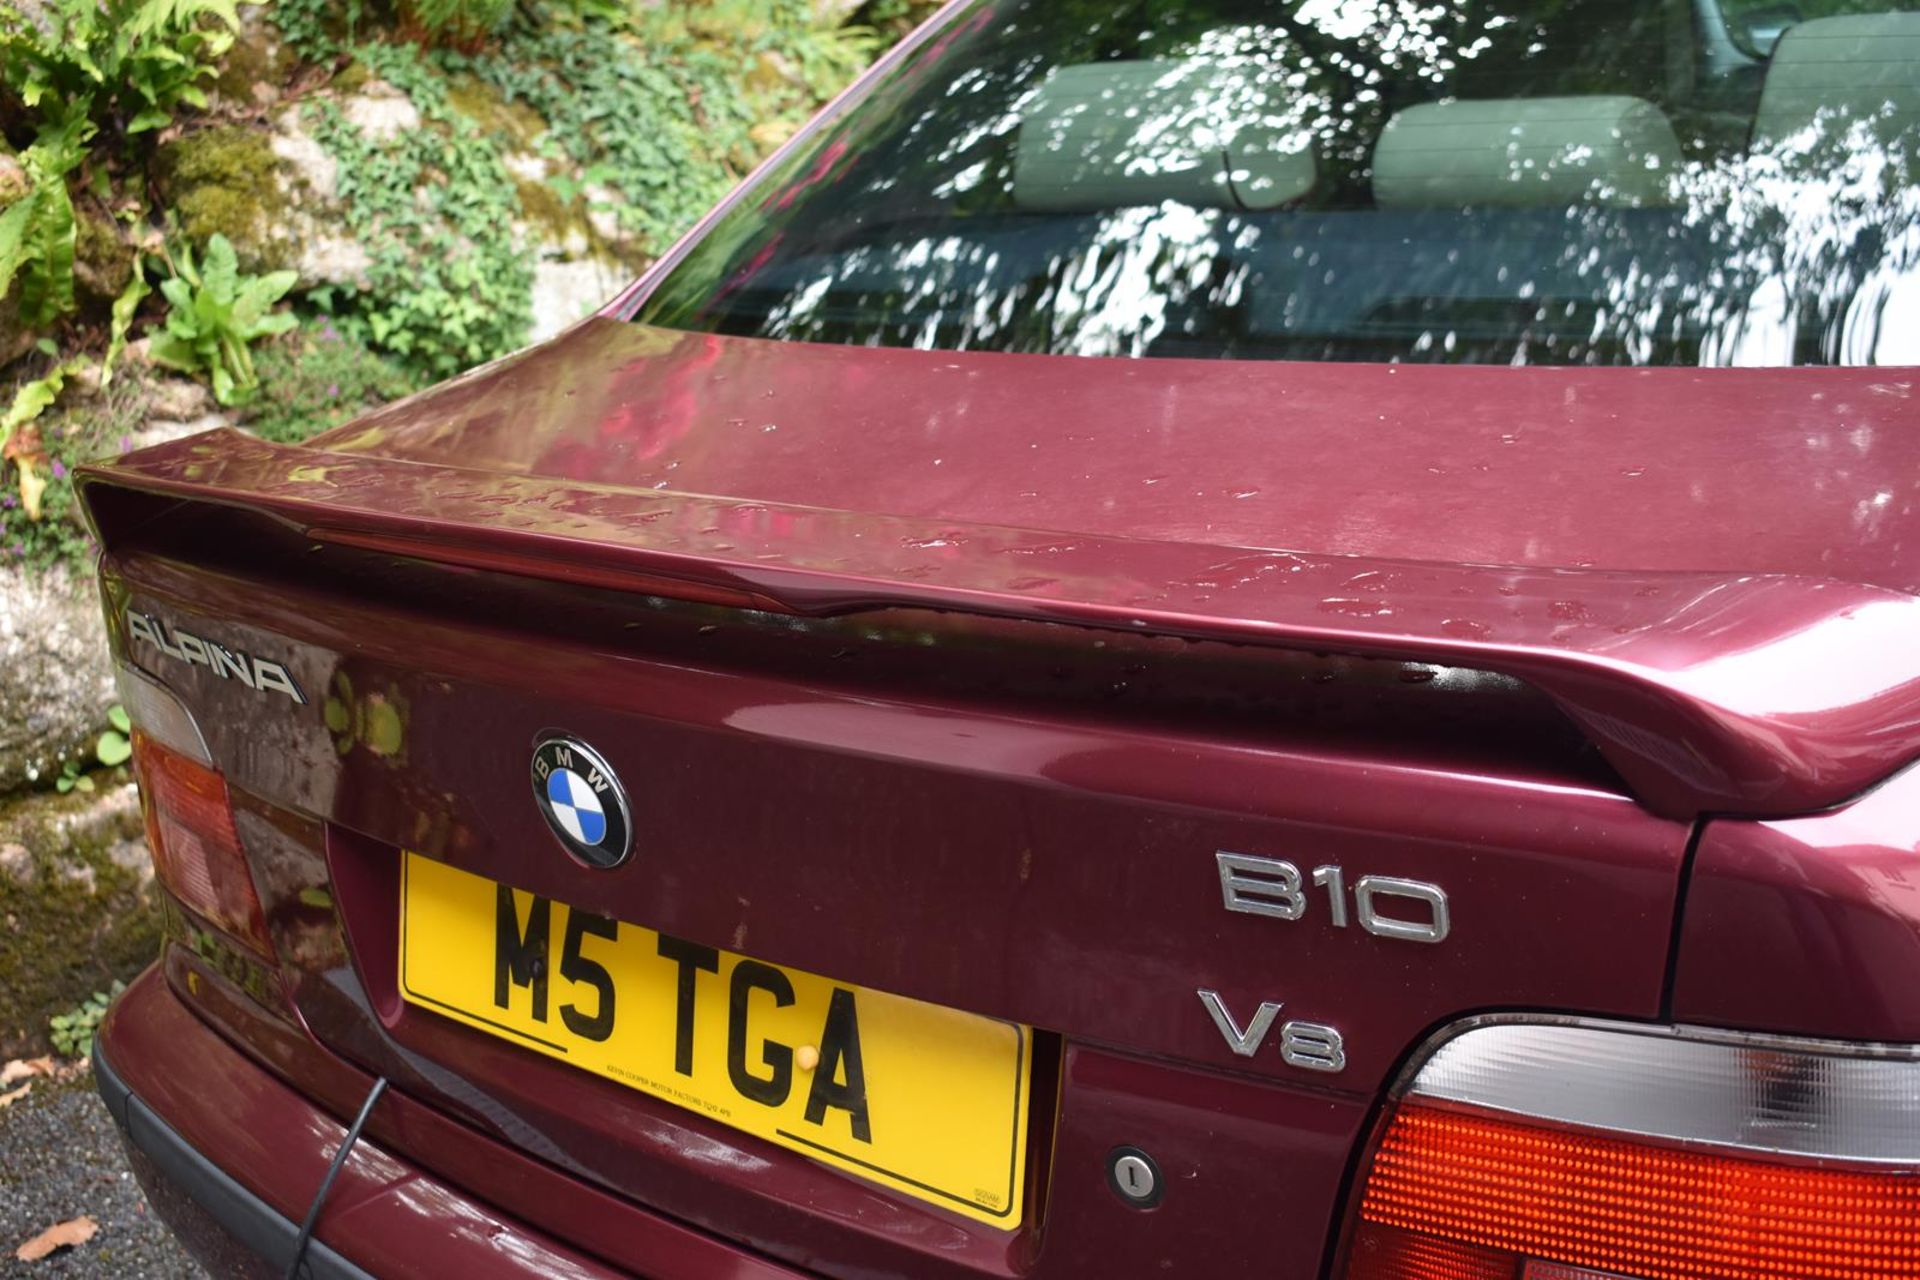 A rare 1999 BMW E39 B10 Alpina Registration number M5 TGA Chassis No GF10462 V5C MOT expires - Image 11 of 45